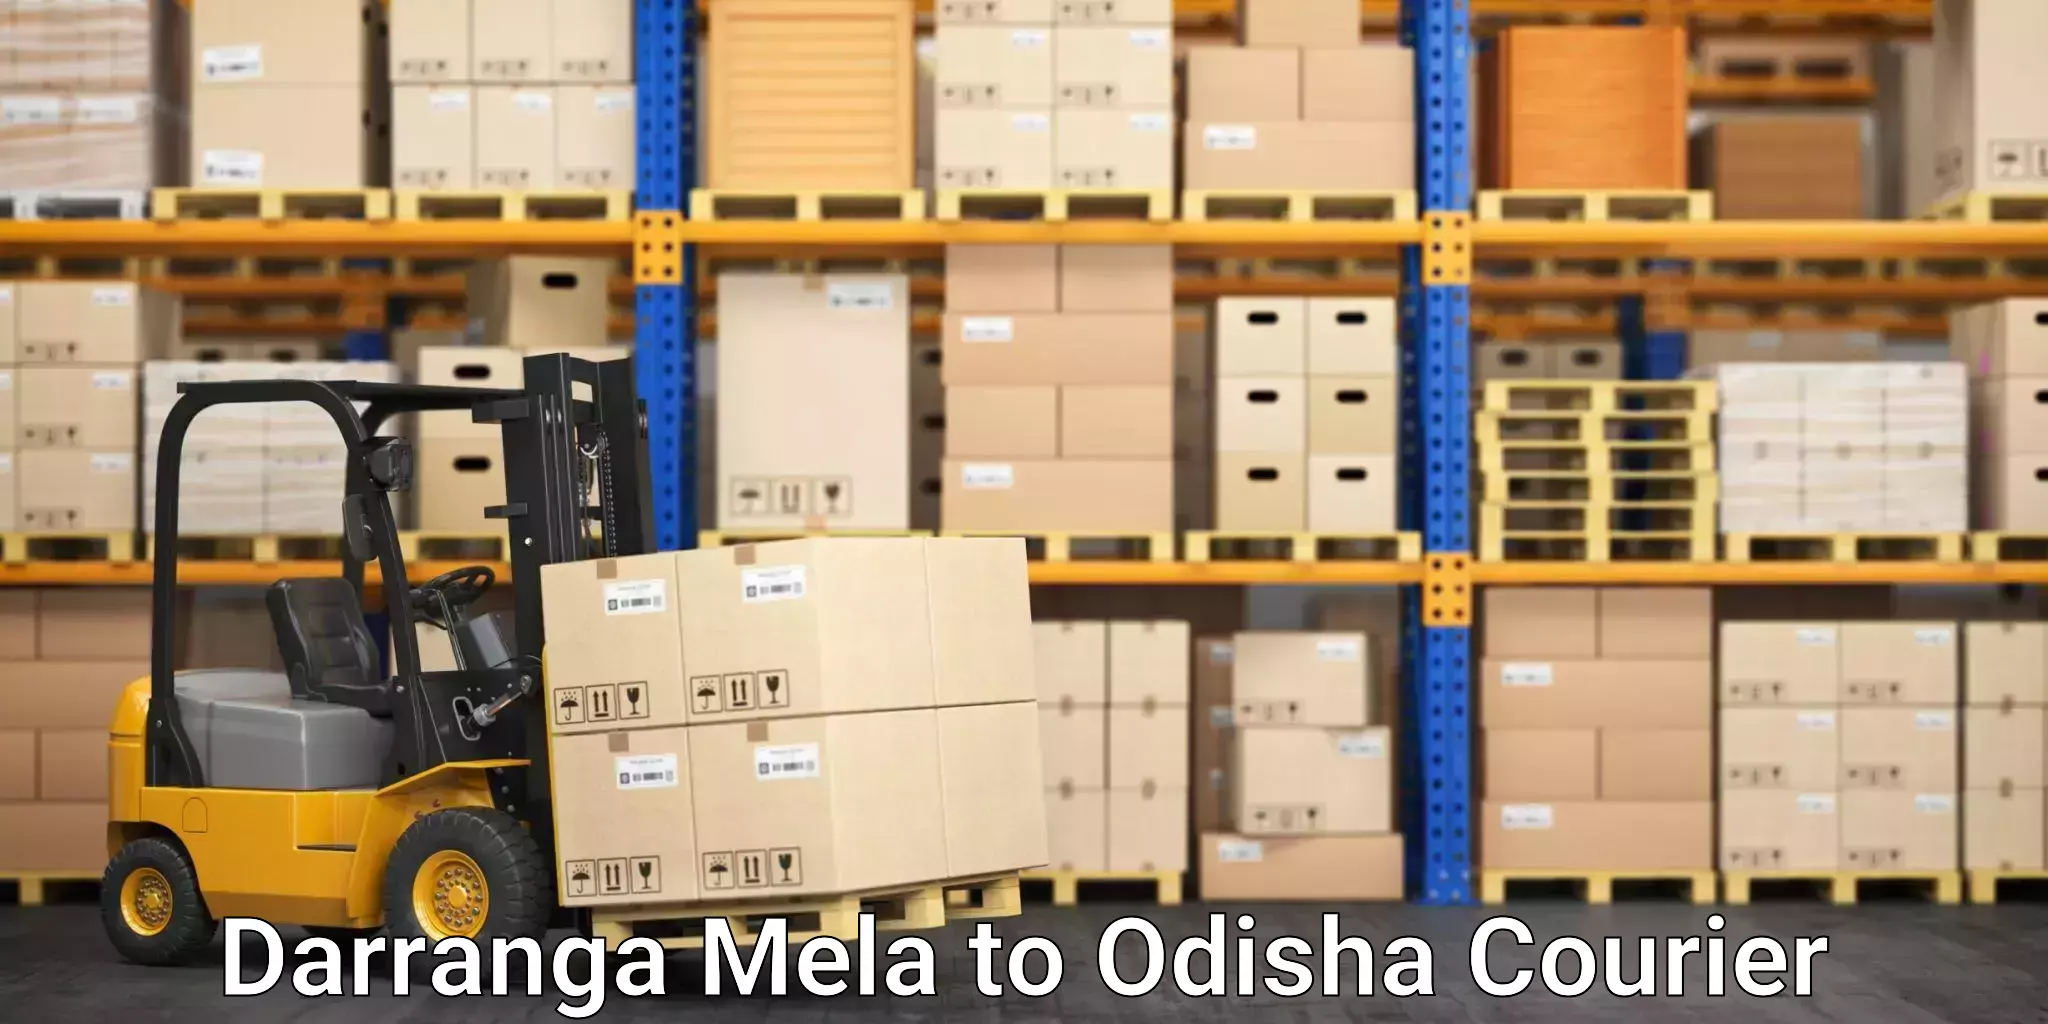 Digital courier platforms Darranga Mela to Odisha